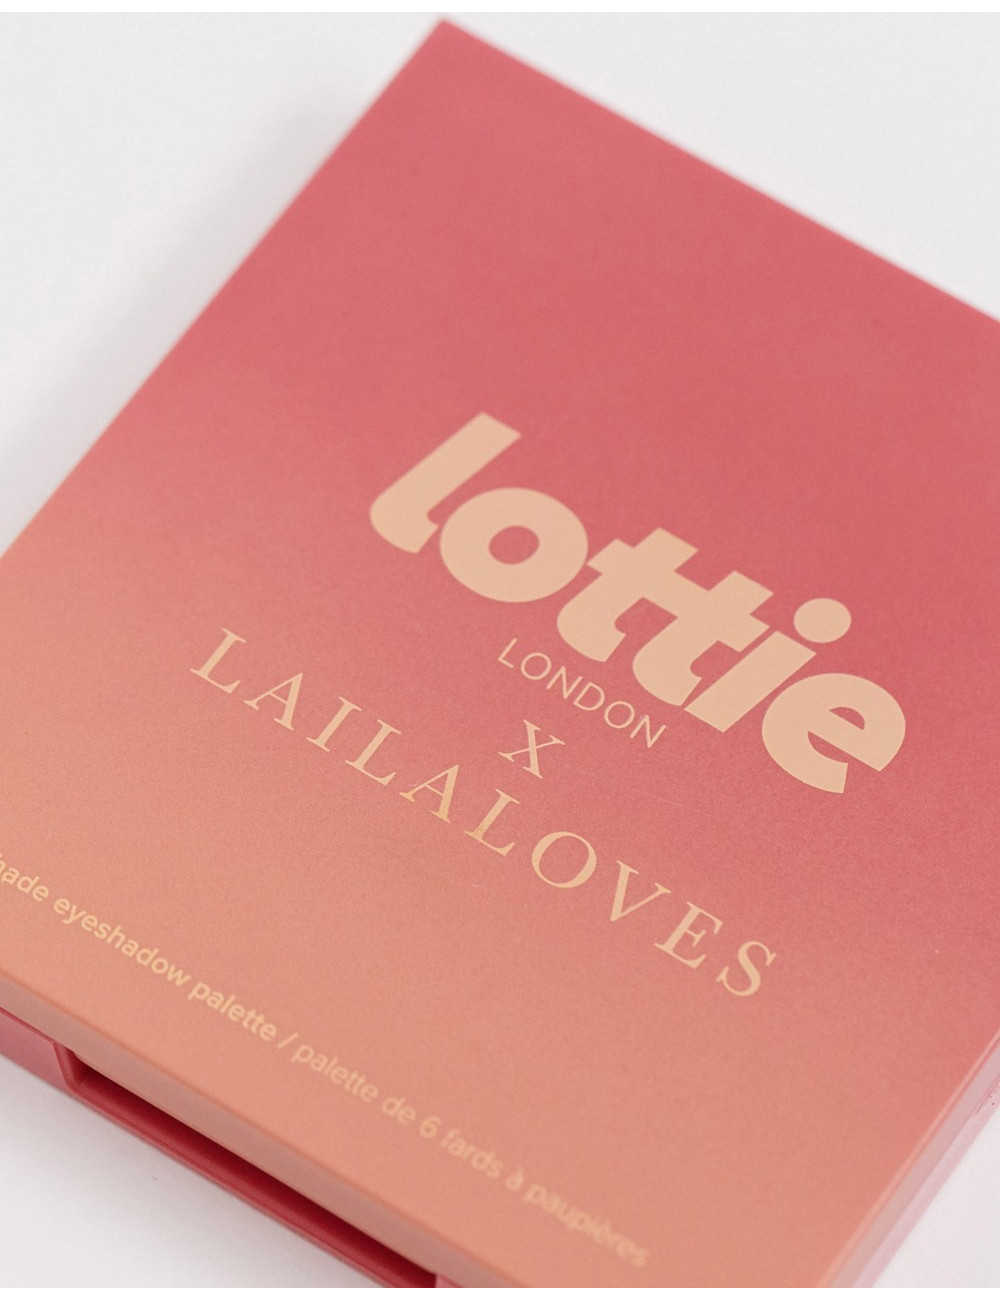 Lottie London x Laila Loves...